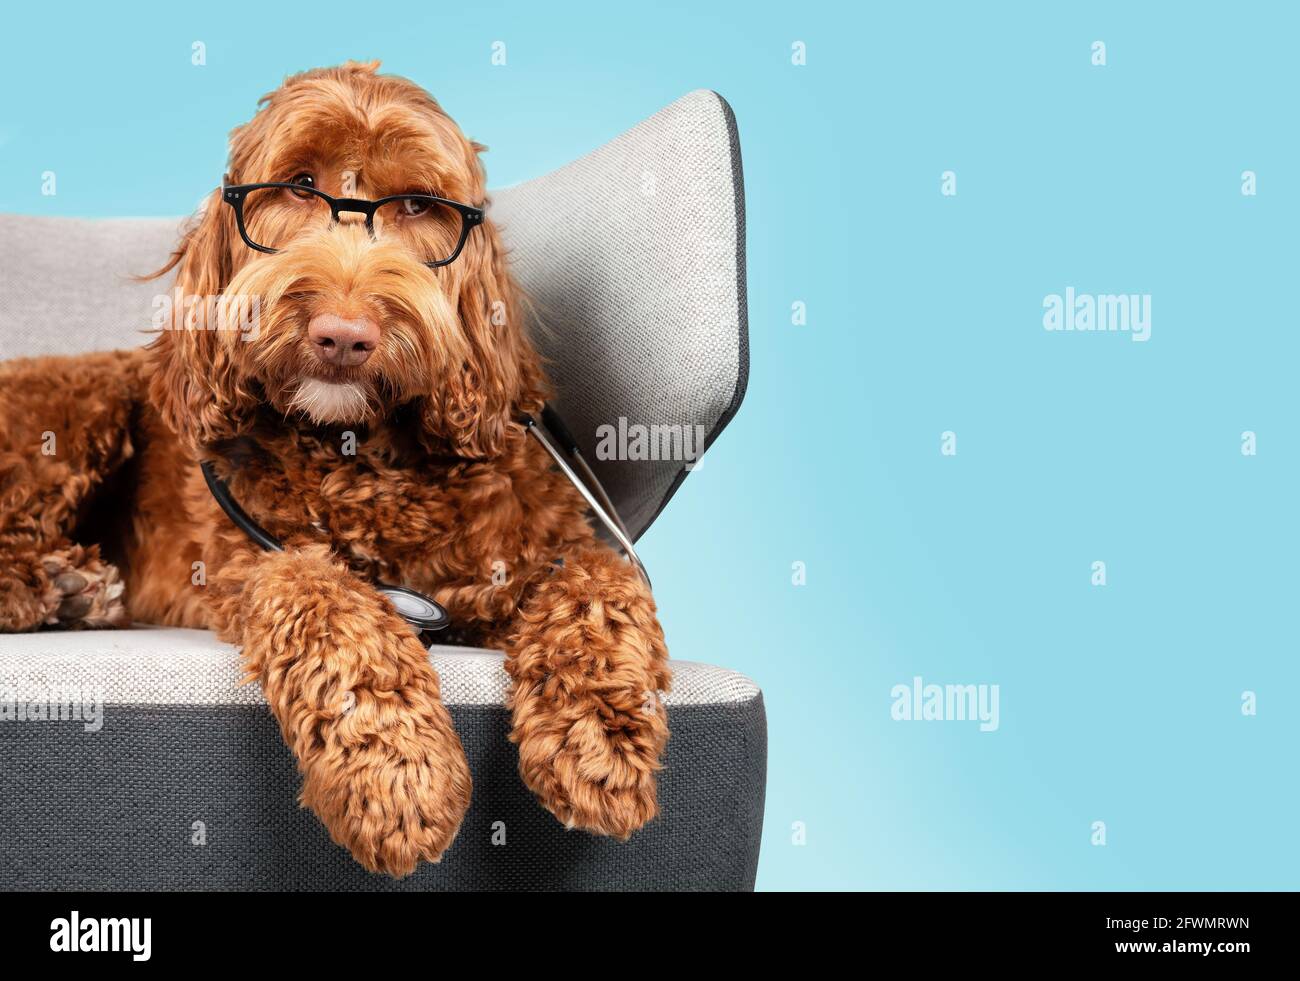 Chien Labraddoodle avec des lunettes et un stéthoscope sur une chaise avec fond bleu. Joli chien doux avec tête inclinée et expression d'écoute. Animaux de compagnie Banque D'Images